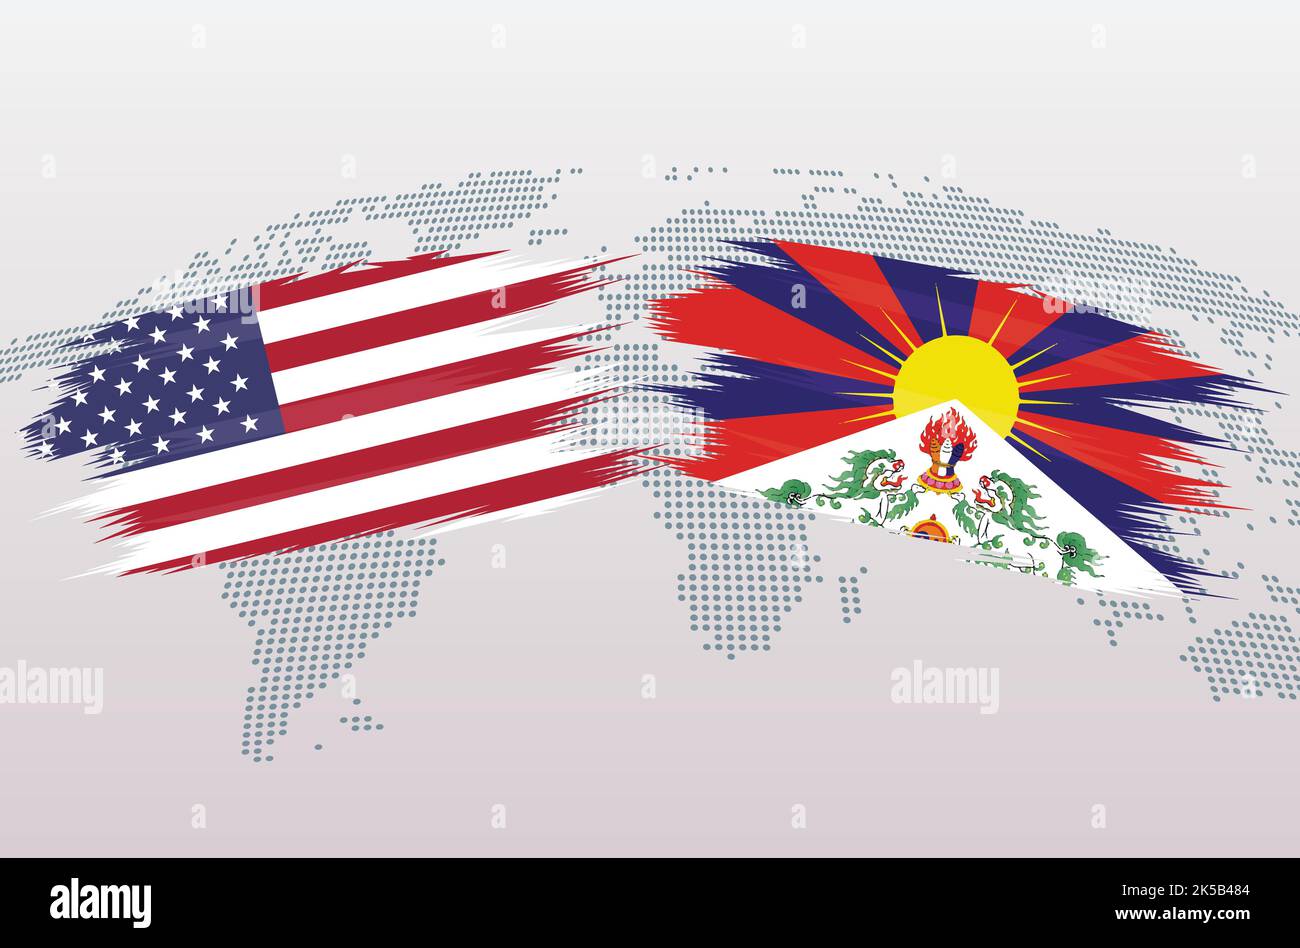 EE.UU. Vs banderas Tibet. Las banderas de los Estados Unidos de América vs Tibet, aisladas sobre fondo gris del mapa del mundo. Ilustración vectorial. Ilustración del Vector